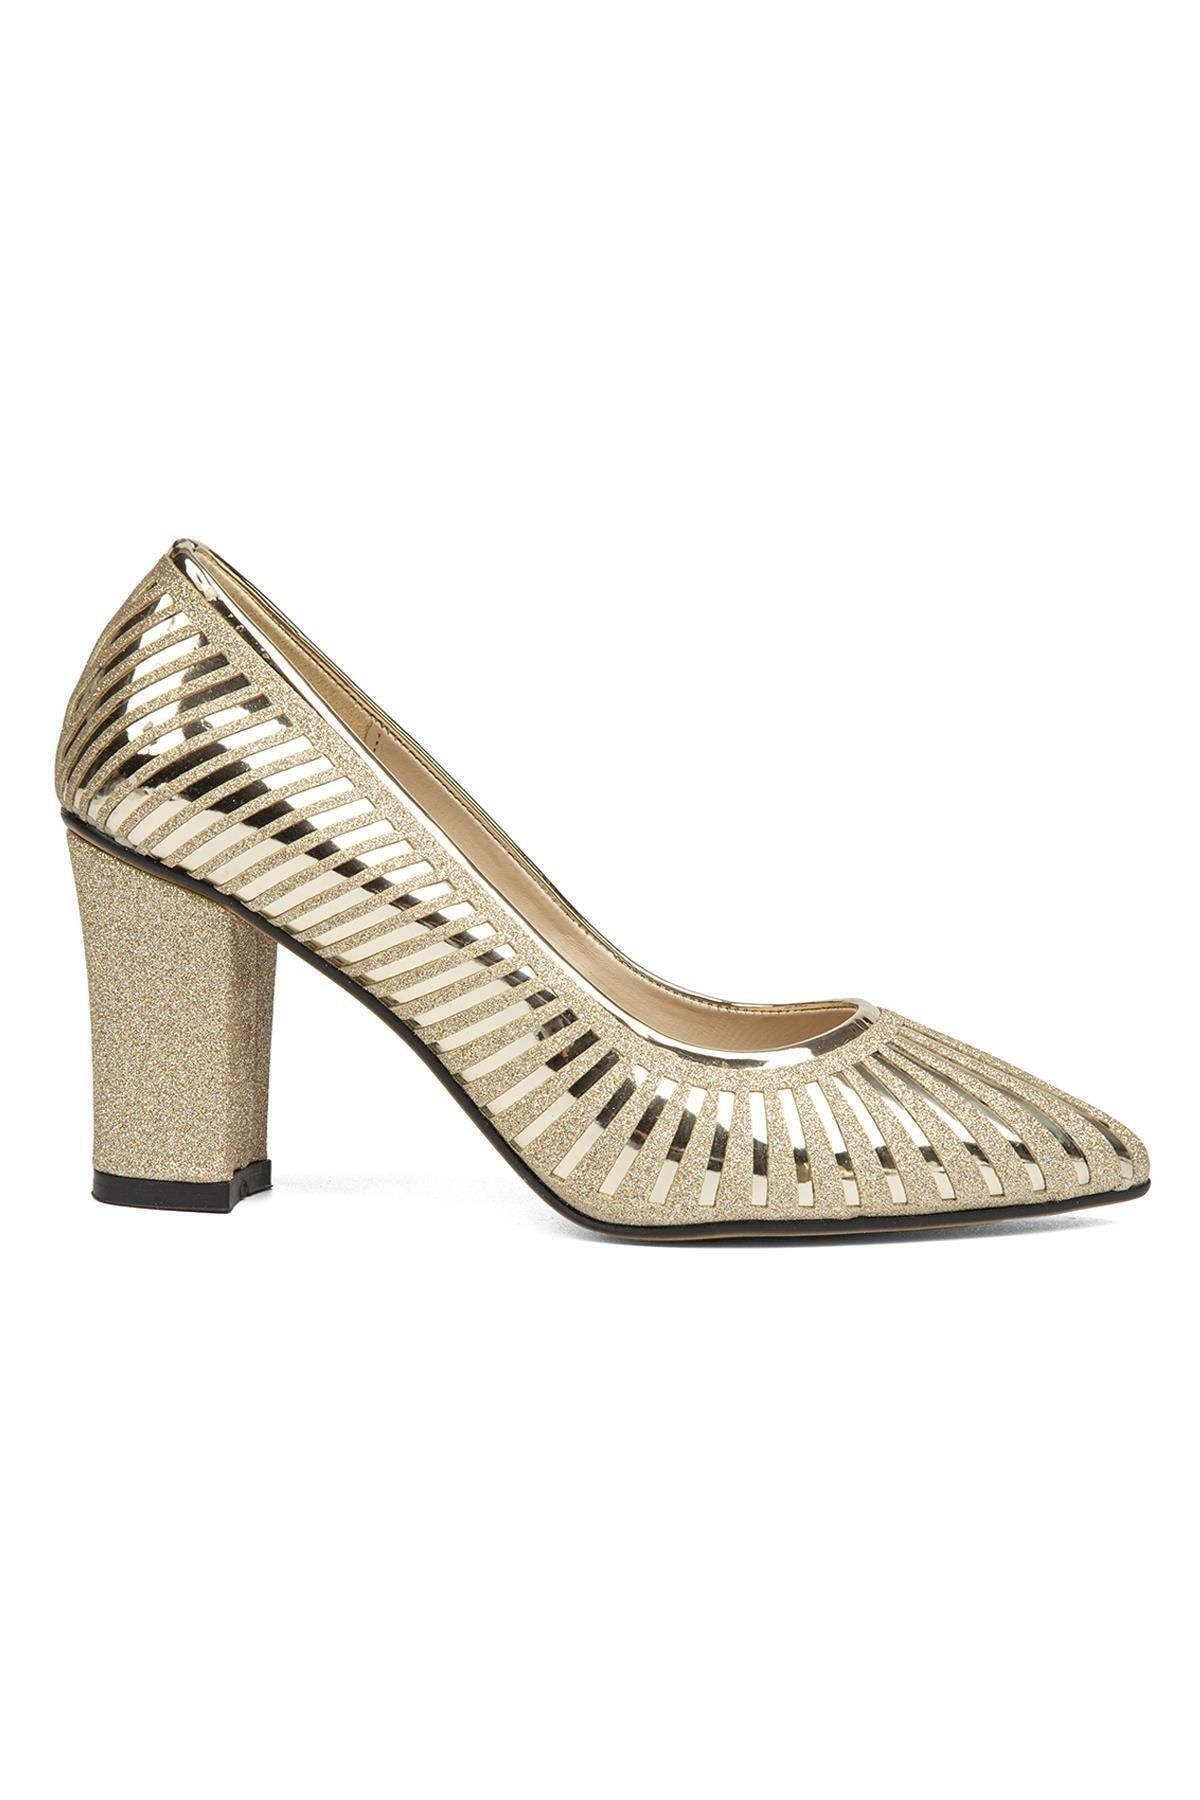 Pierre Cardin ® | Pc-52037-3478 Altin - Kadın Topuklu Ayakkabı